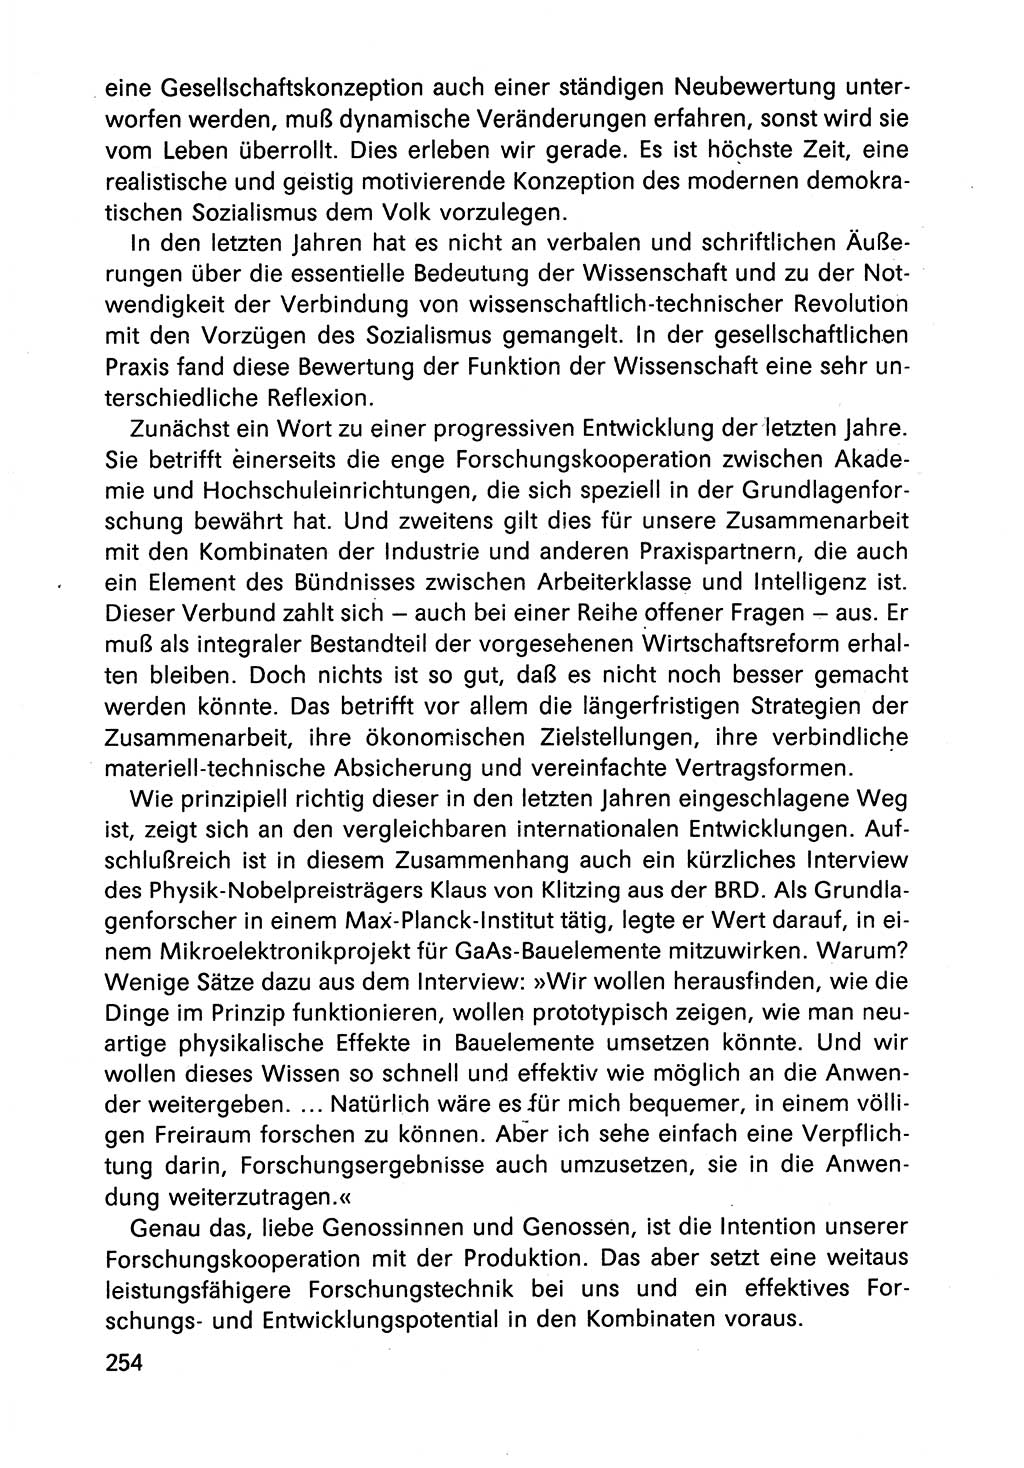 Diskussionsbeiträge, 10. Tagung des ZK (Zentralkomitee) der SED (Sozialistische Einheitspartei Deutschlands) [Deutsche Demokratische Republik (DDR)] 1989, Seite 254 (Disk.-Beitr. 10. Tg. ZK SED DDR 1989, S. 254)